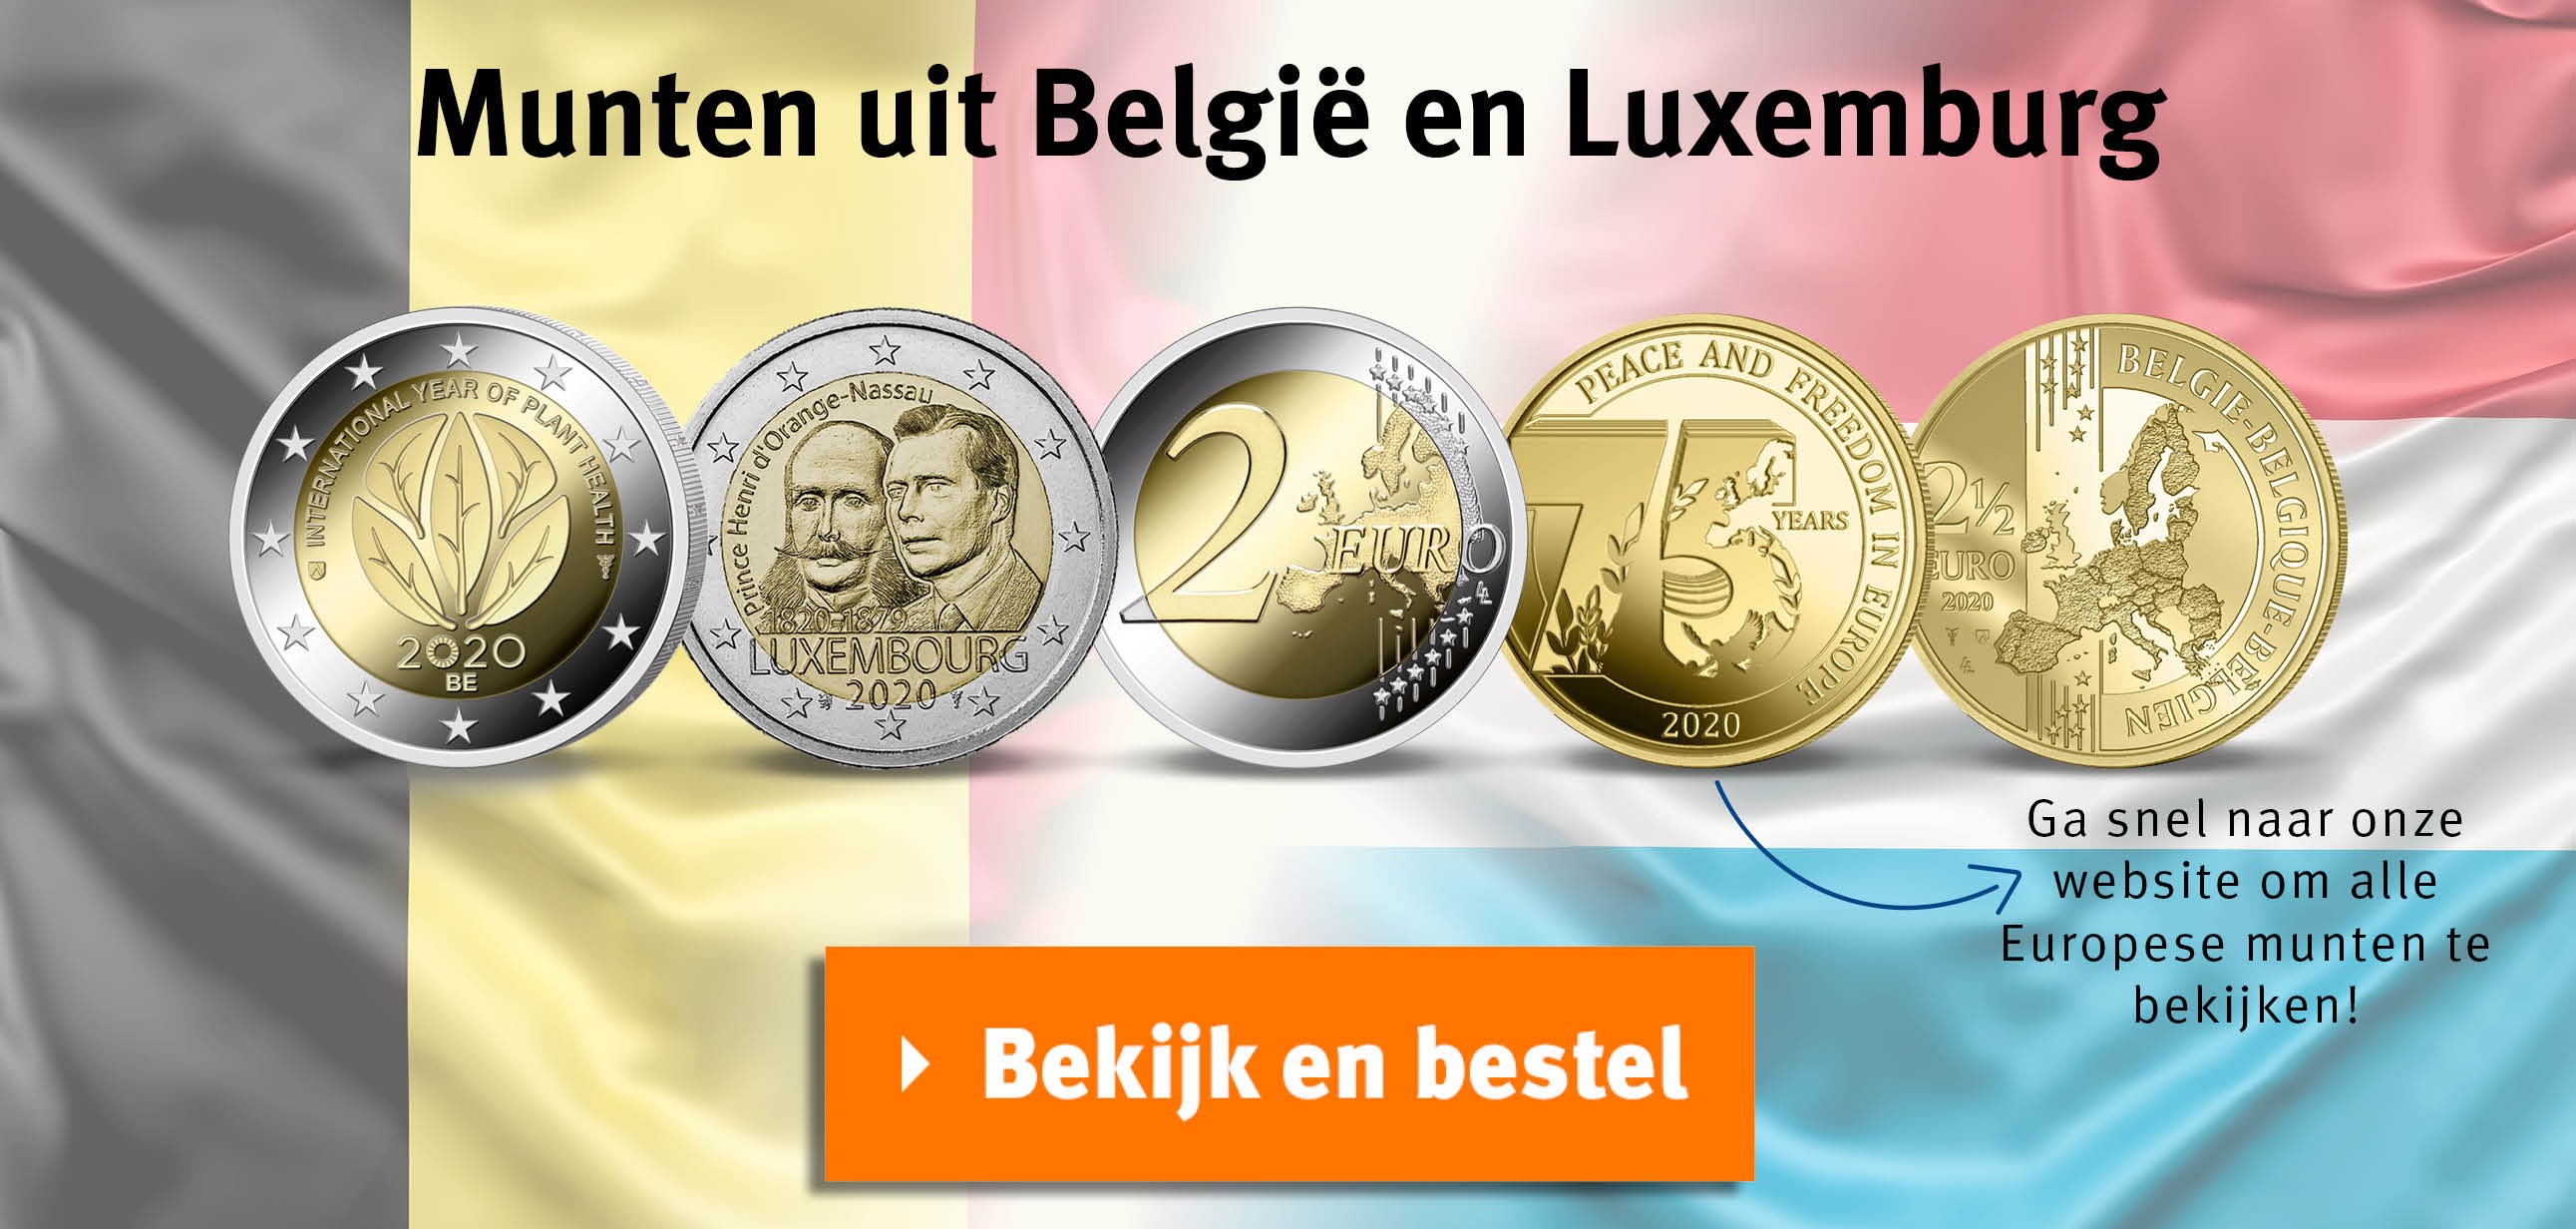 Bekijk en bestel: munten uit België en Luxemburg